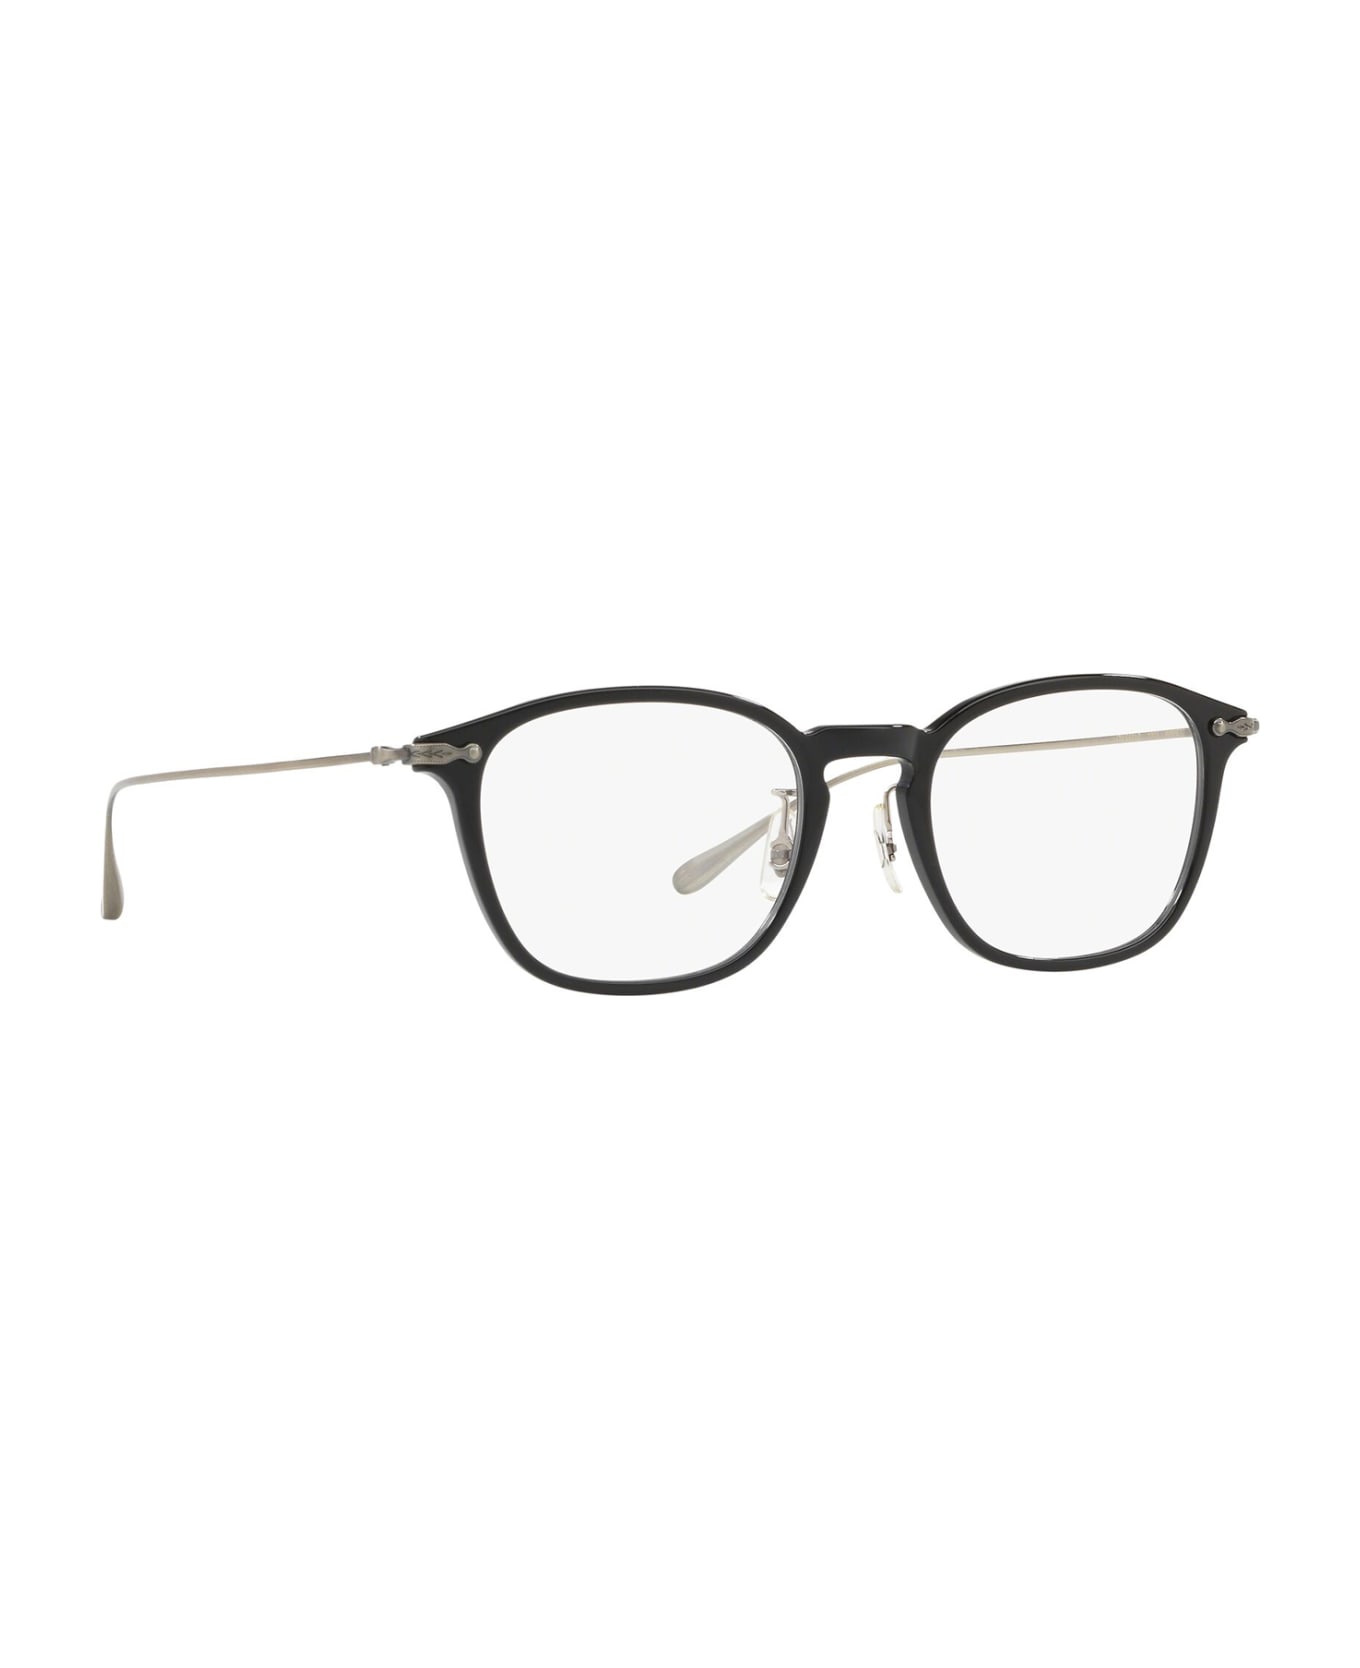 Oliver Peoples Ov5371d Black Glasses - Black